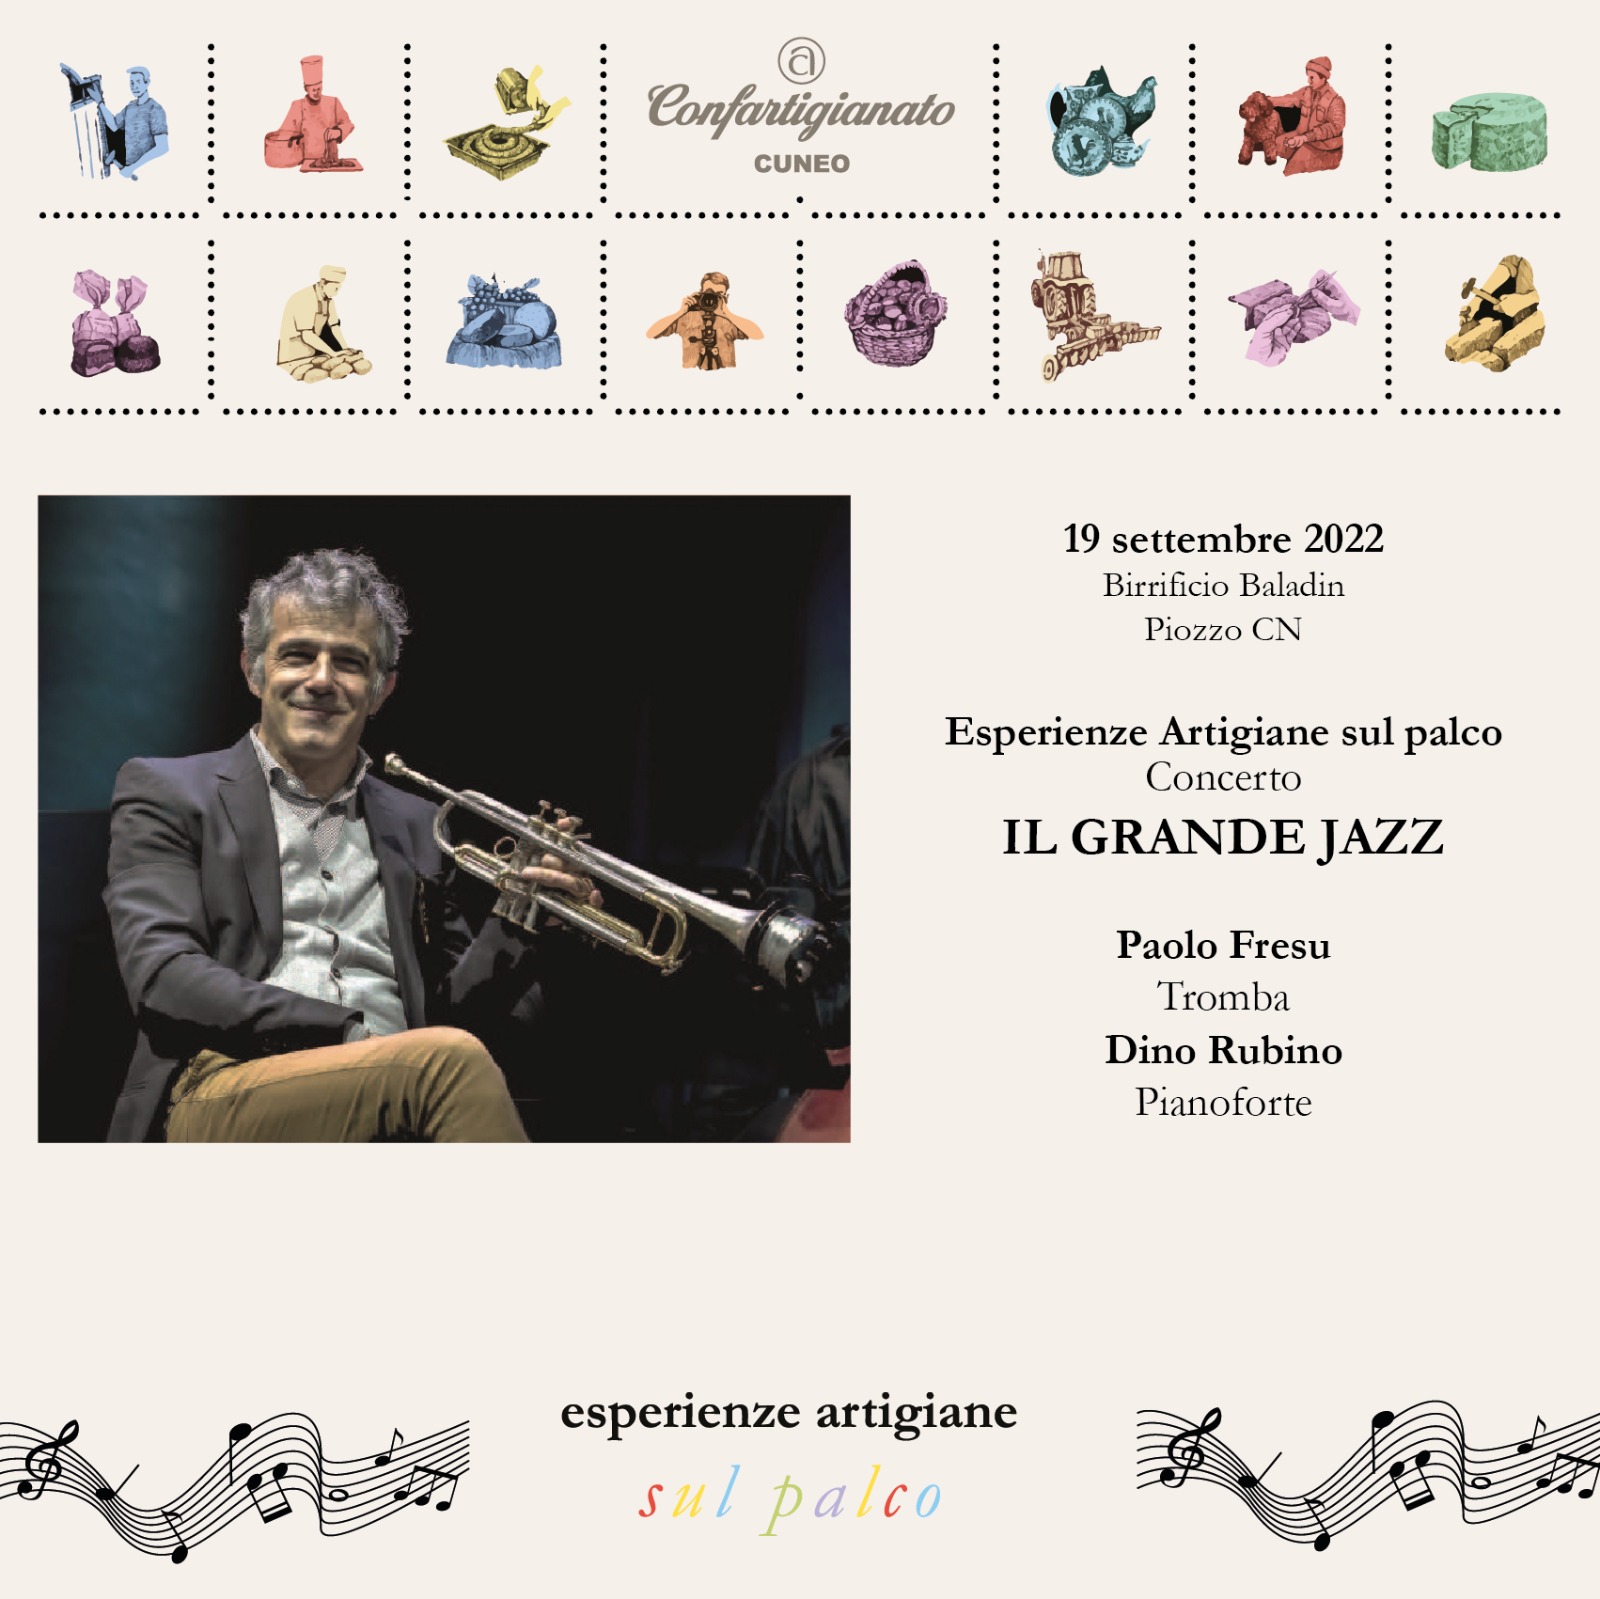 Il Grande Jazz, Eccellenze Creative 2022 – Birrificio Baladin, Piozzo (CN)